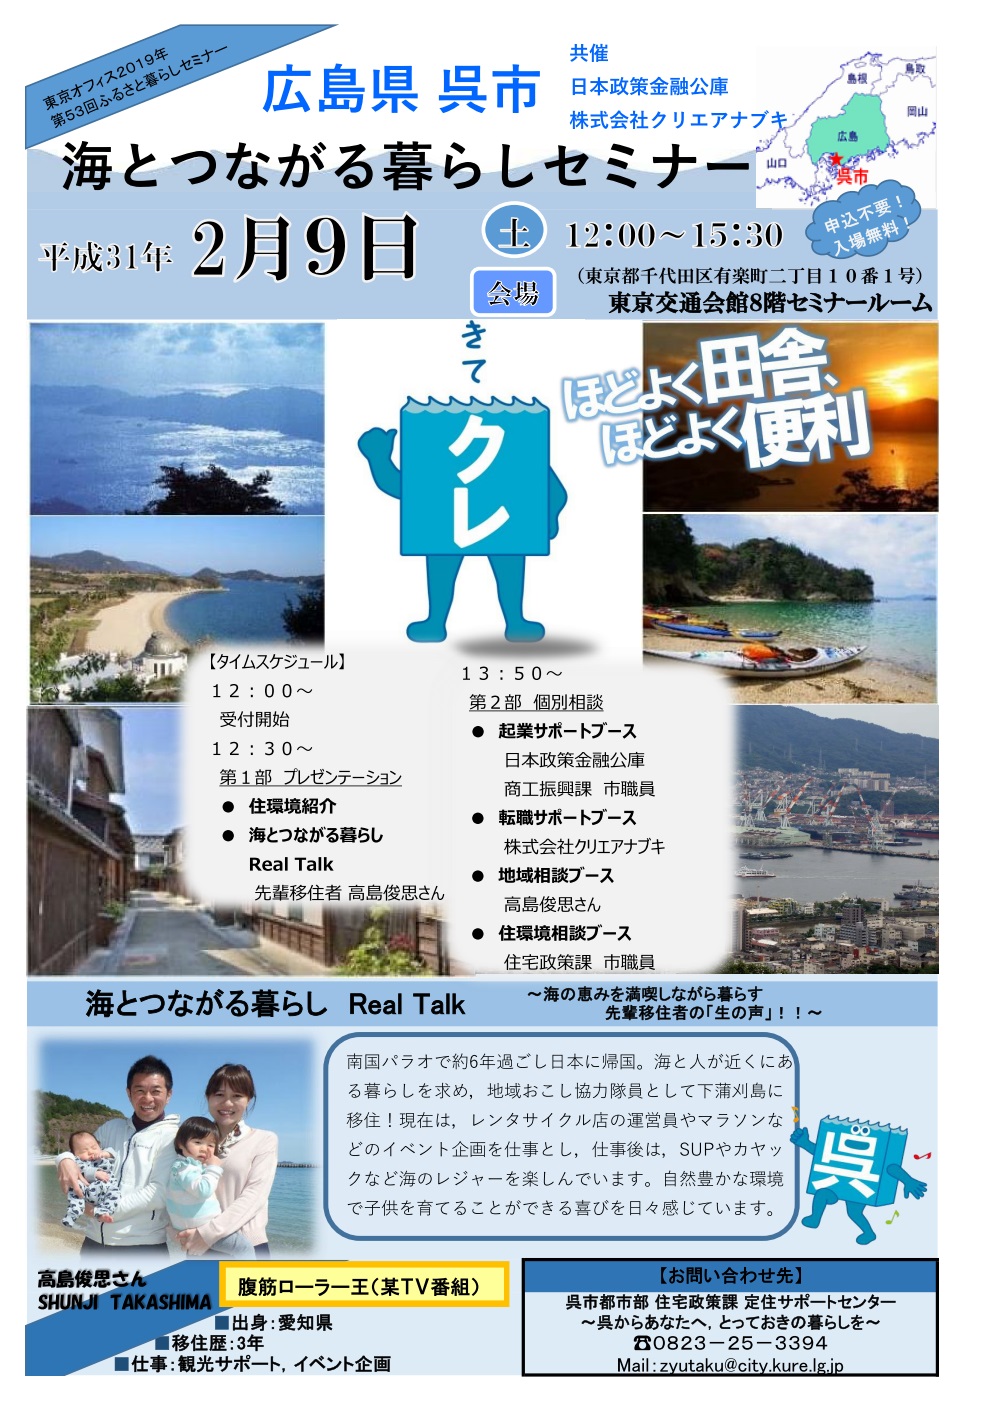 広島県呉市 海とつながる暮らしセミナー | 移住関連イベント情報